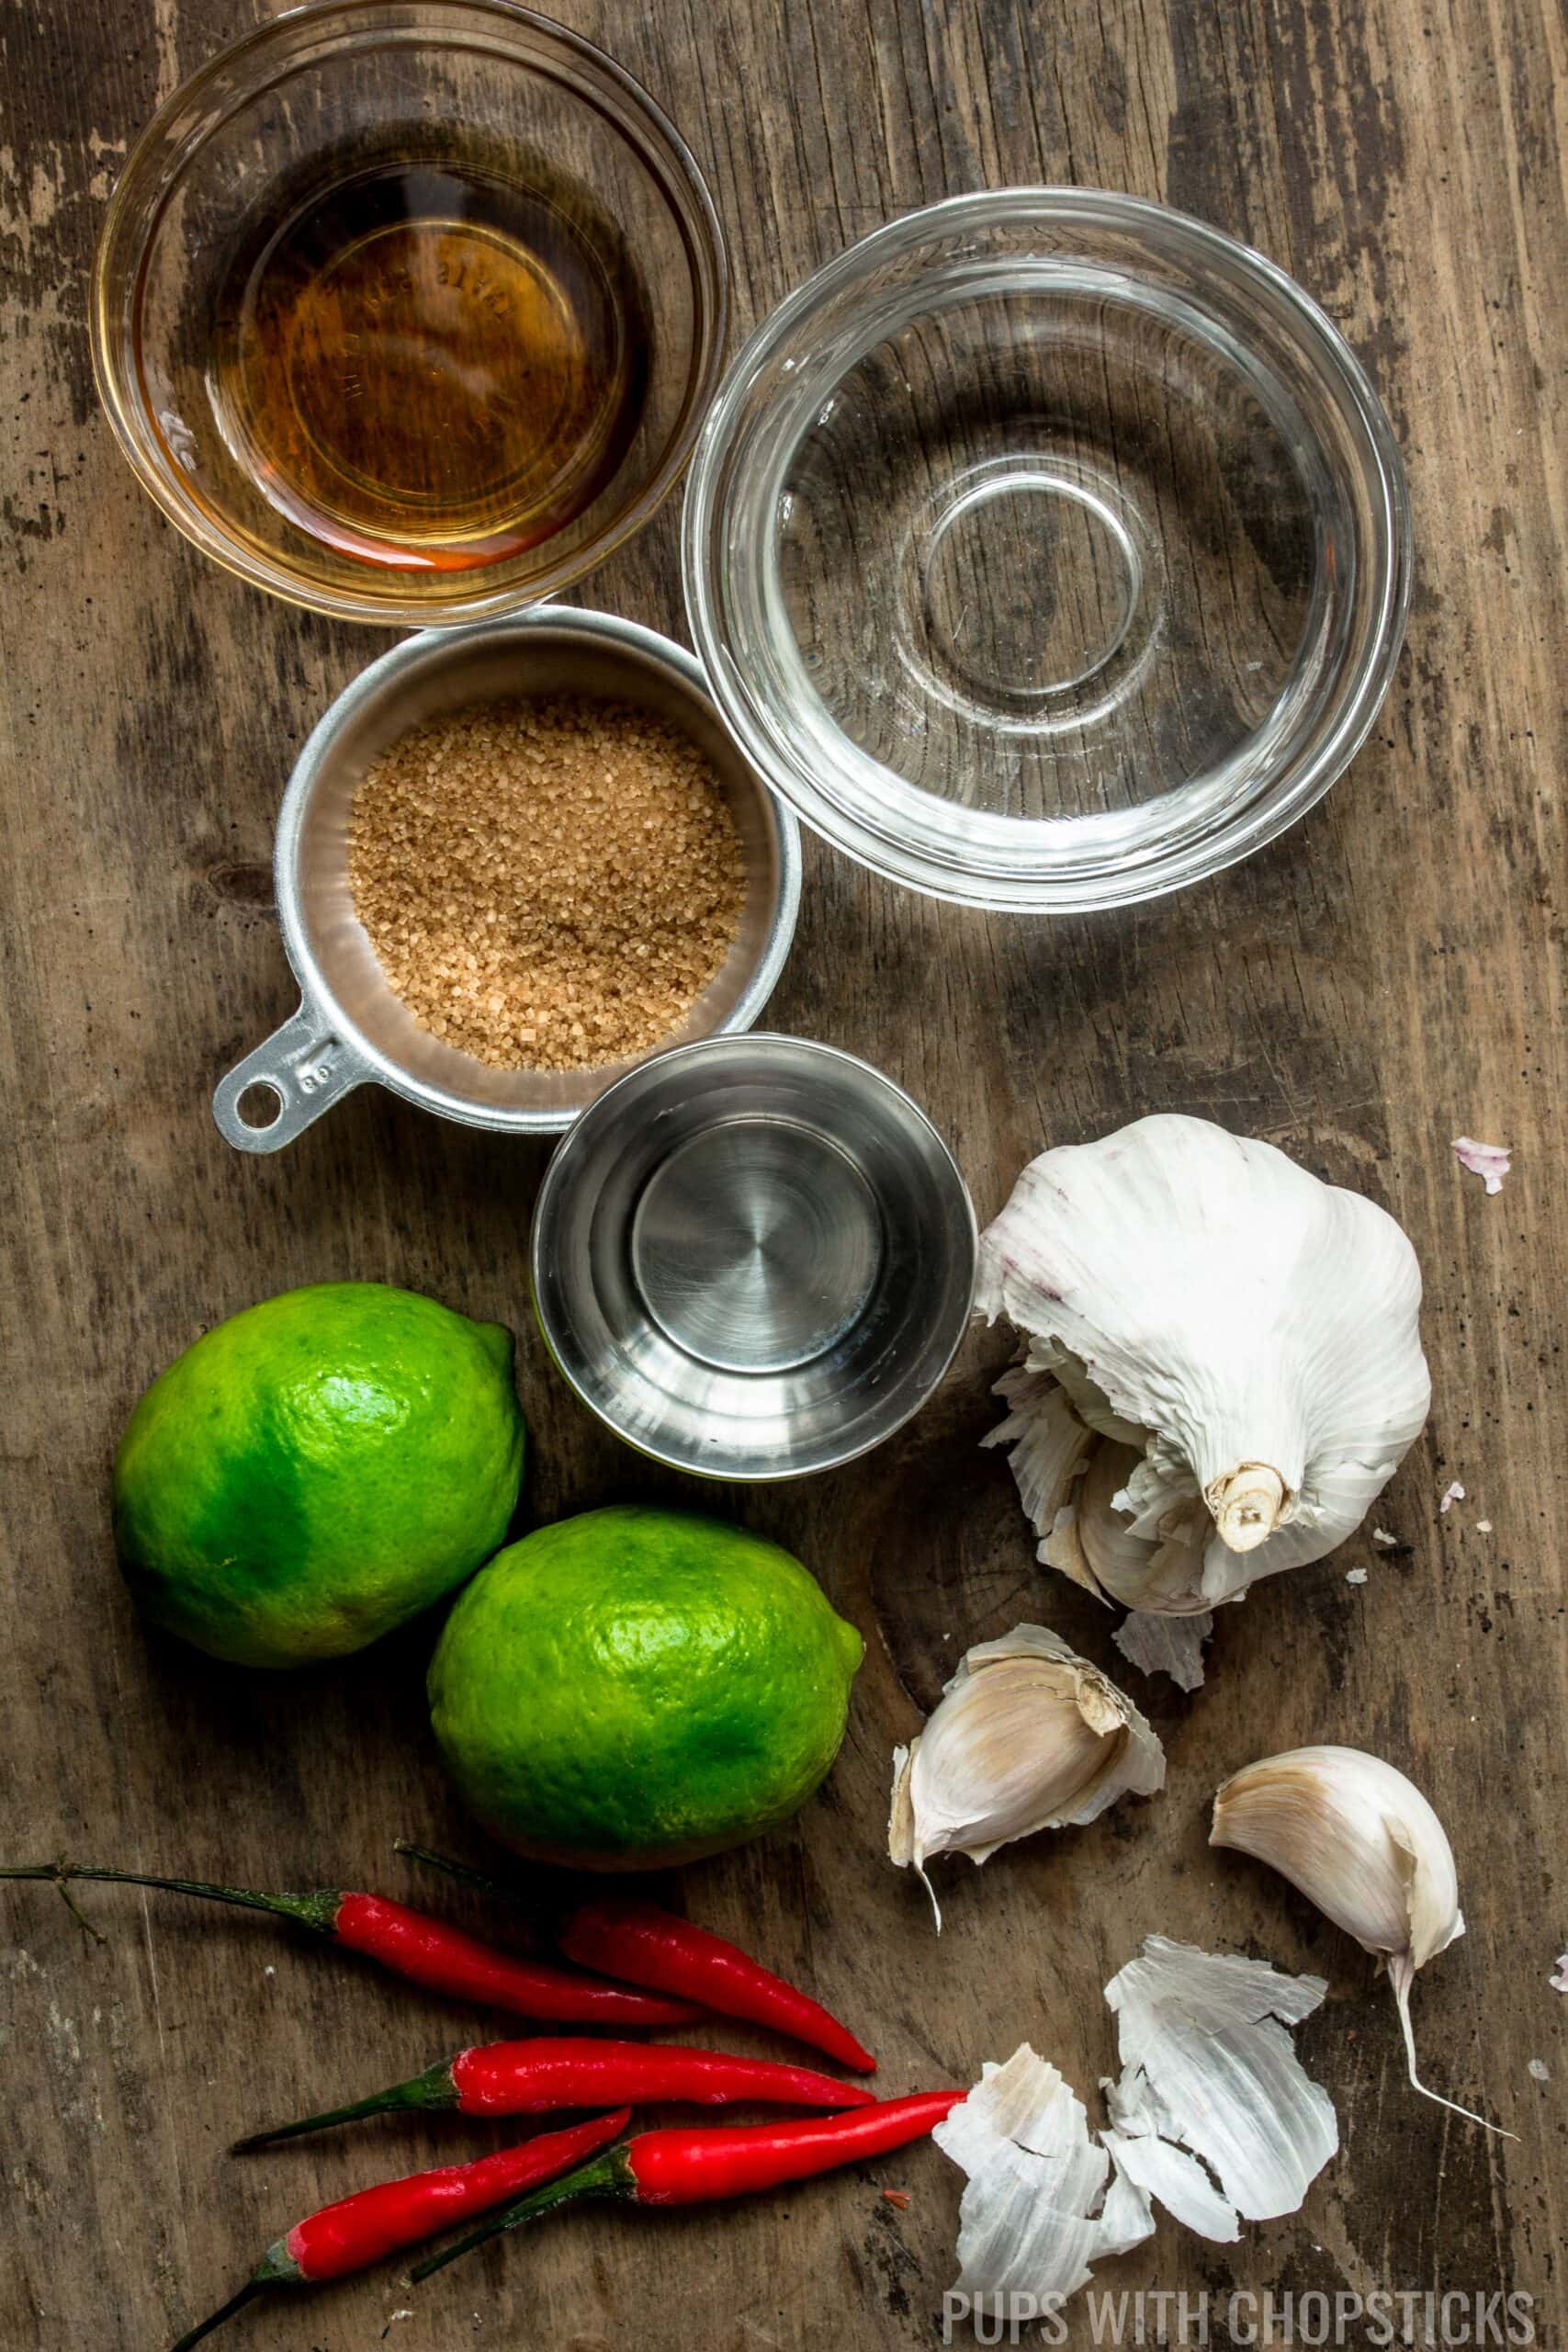 Nuoc cham ingredients (lime, garlic, fish sauce, sugar, water)